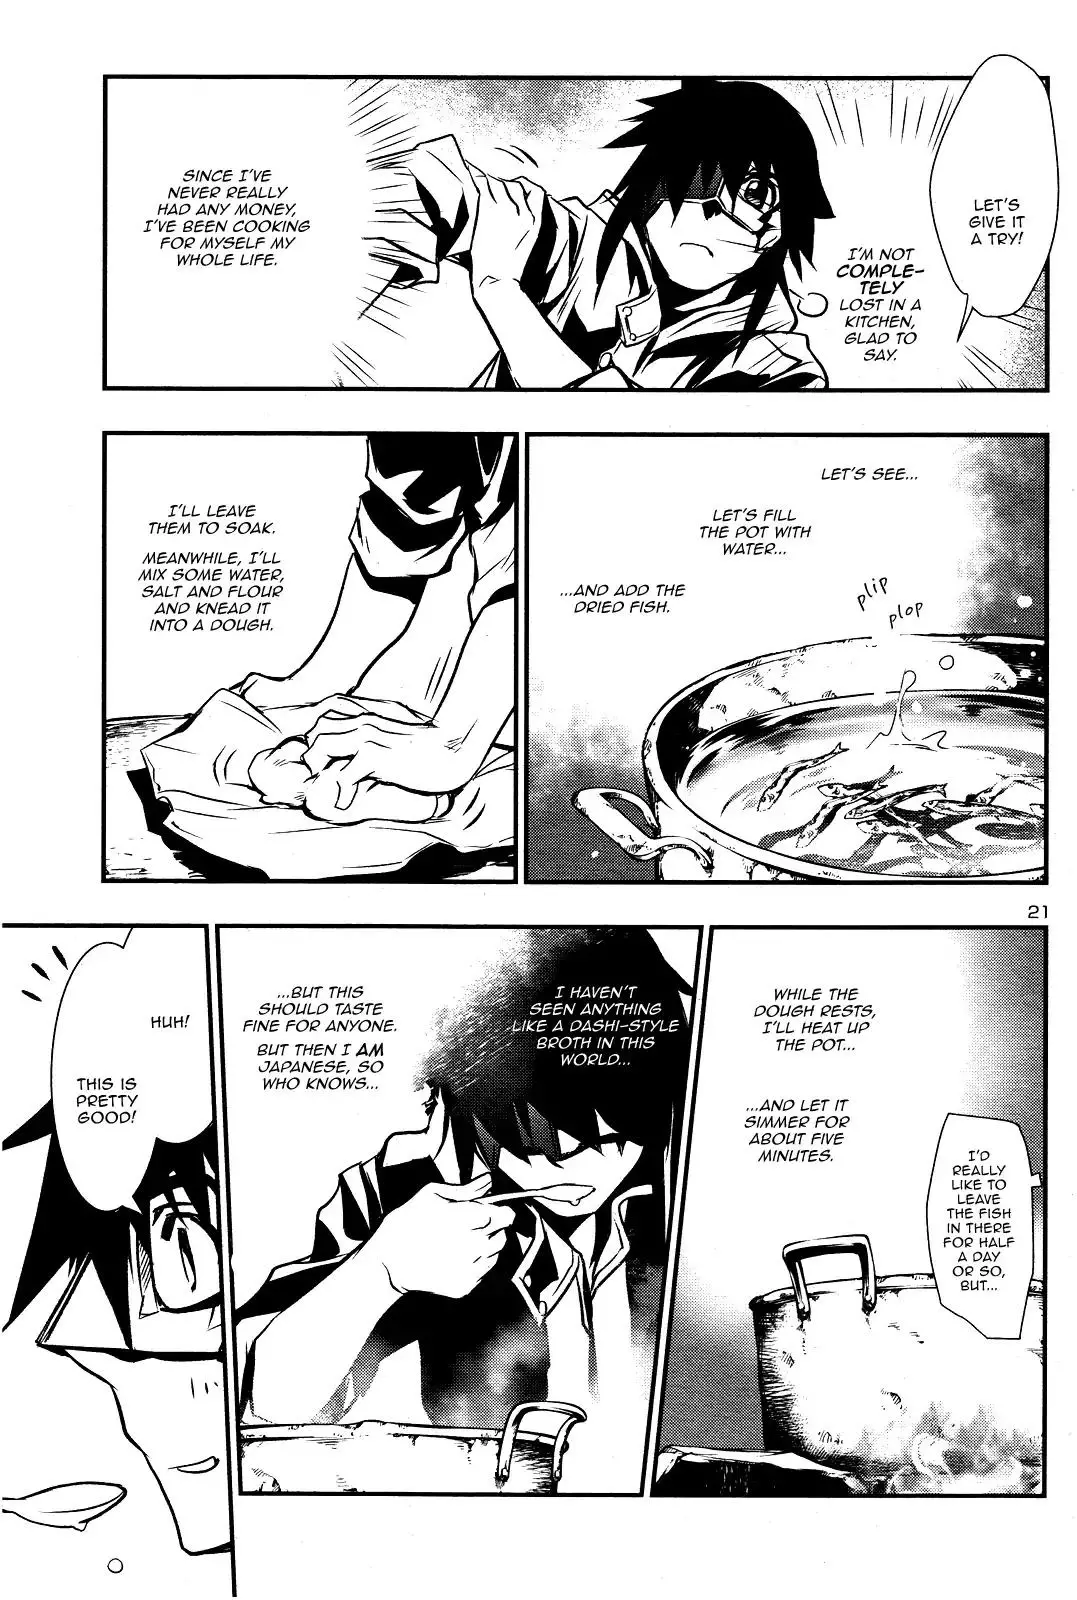 Shinju no Nectar - 17 page 19